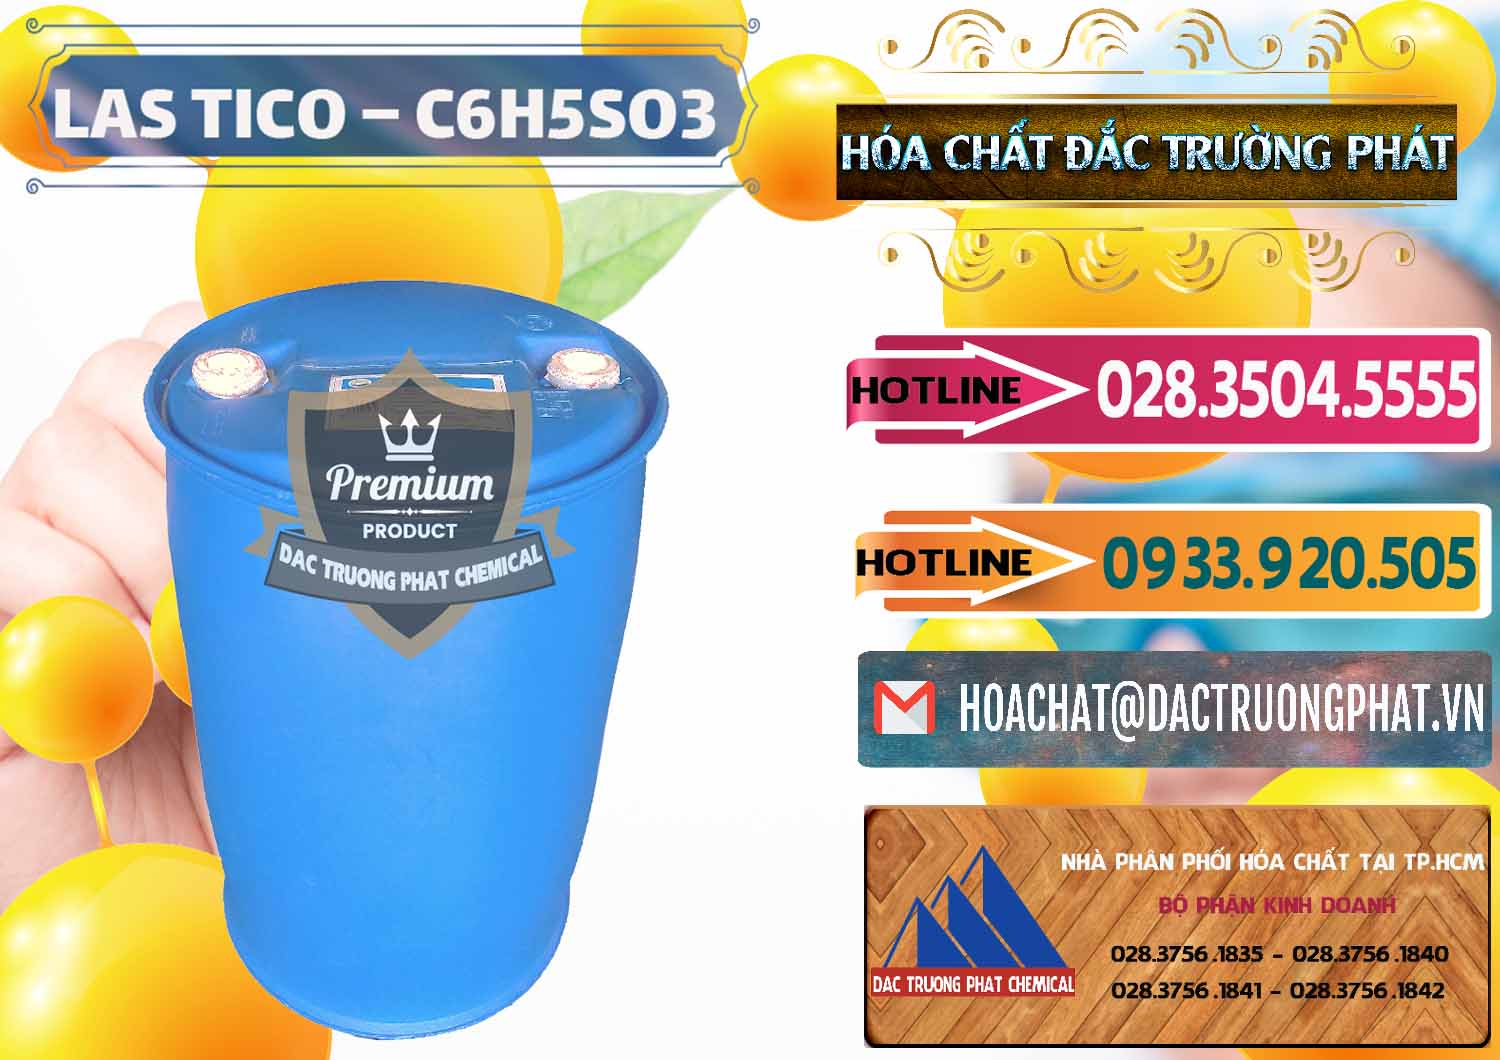 Nhà phân phối ( cung cấp ) Chất tạo bọt Las H Tico Việt Nam - 0190 - Chuyên bán & phân phối hóa chất tại TP.HCM - dactruongphat.vn